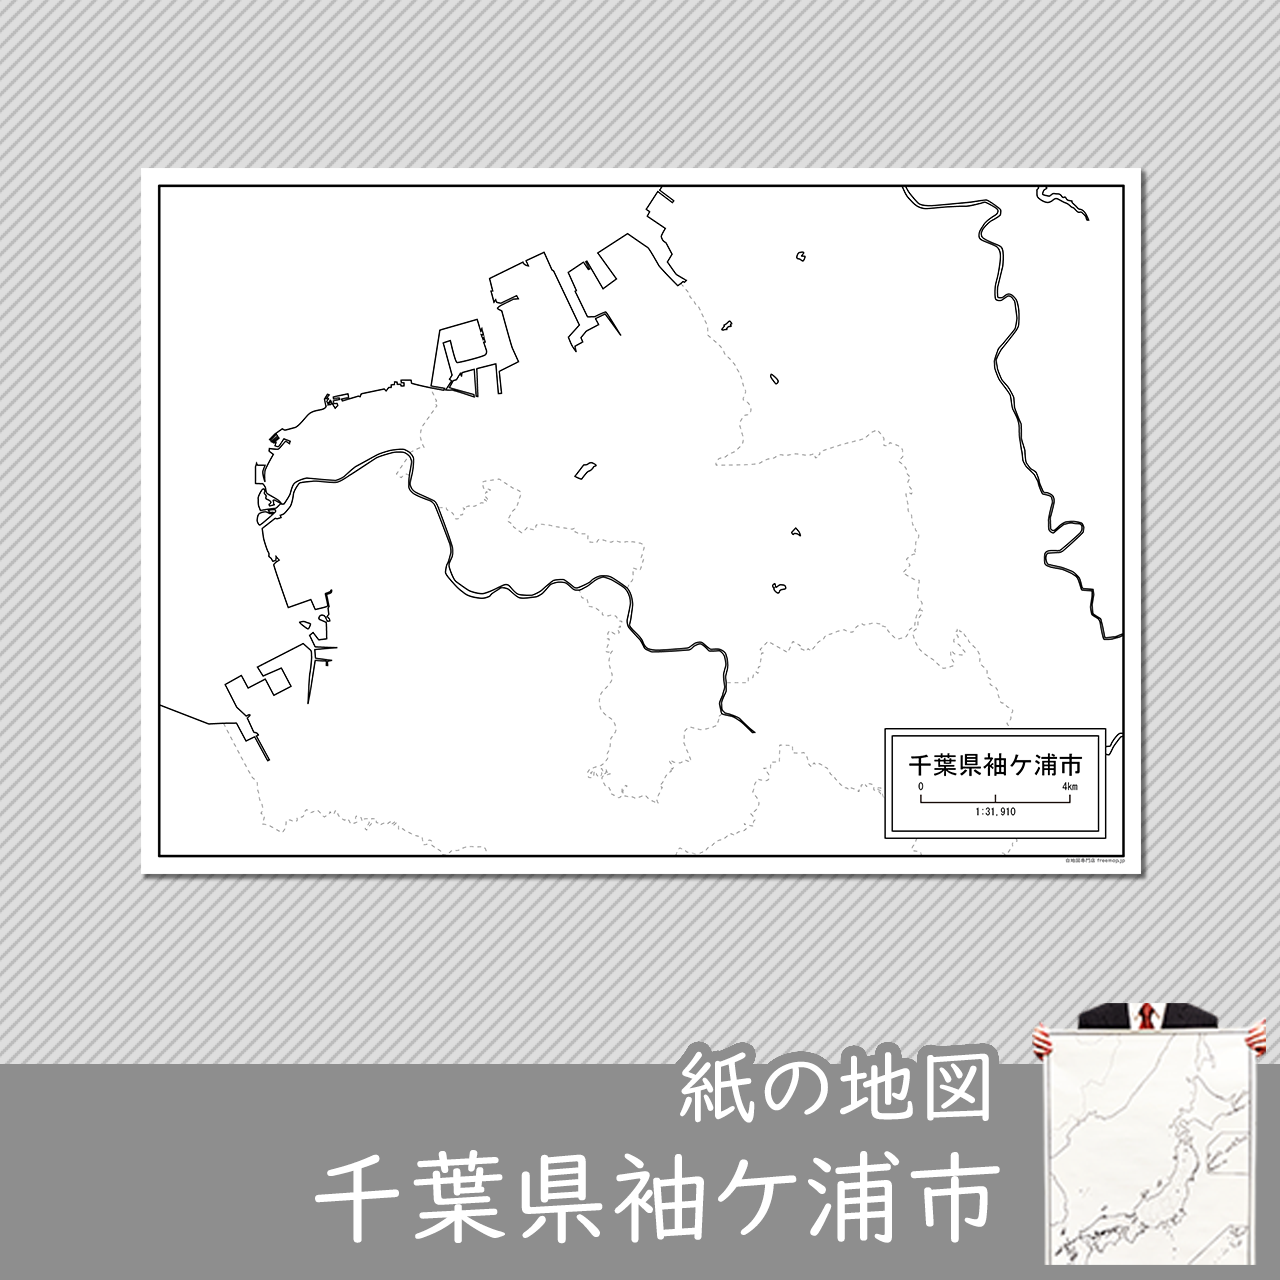 袖ケ浦市の紙の白地図のサムネイル